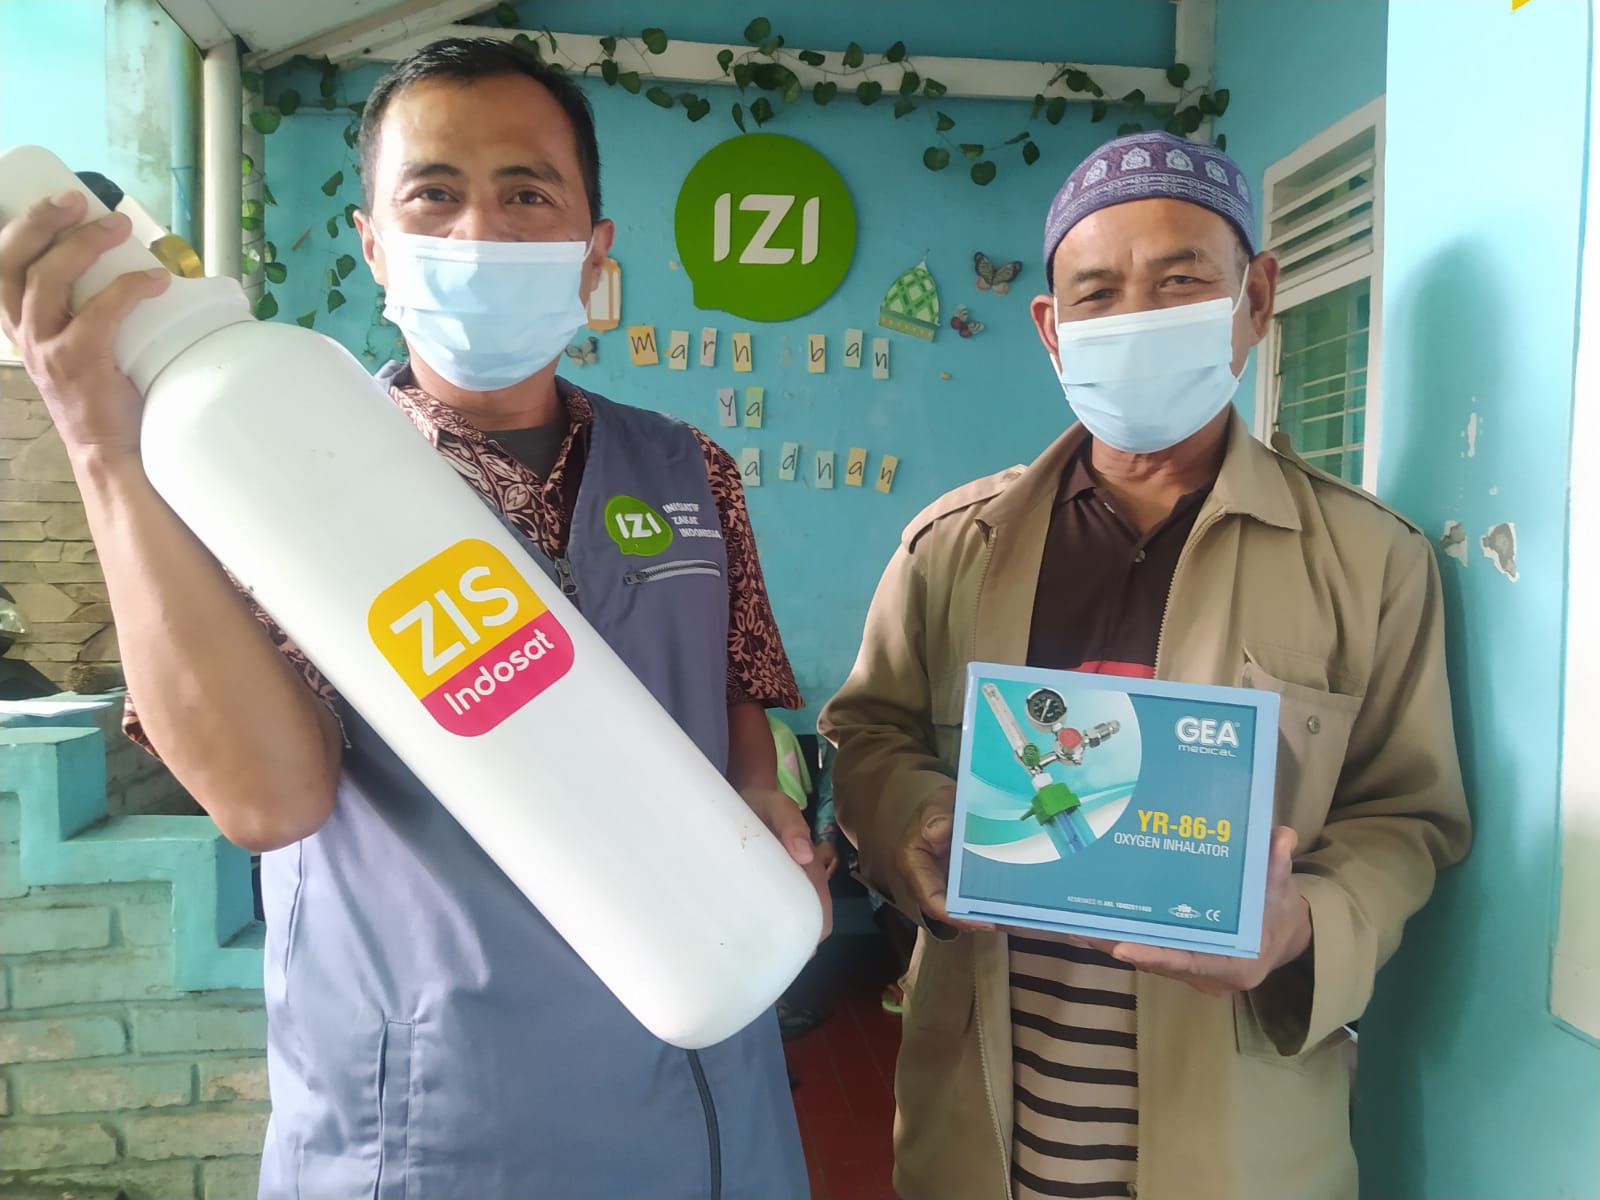 Program manfaat layanan kesehatan tabung oksigen, kerjasama anatara IZI Jabar dan ZIS Indosat, Senin (25/10/21).